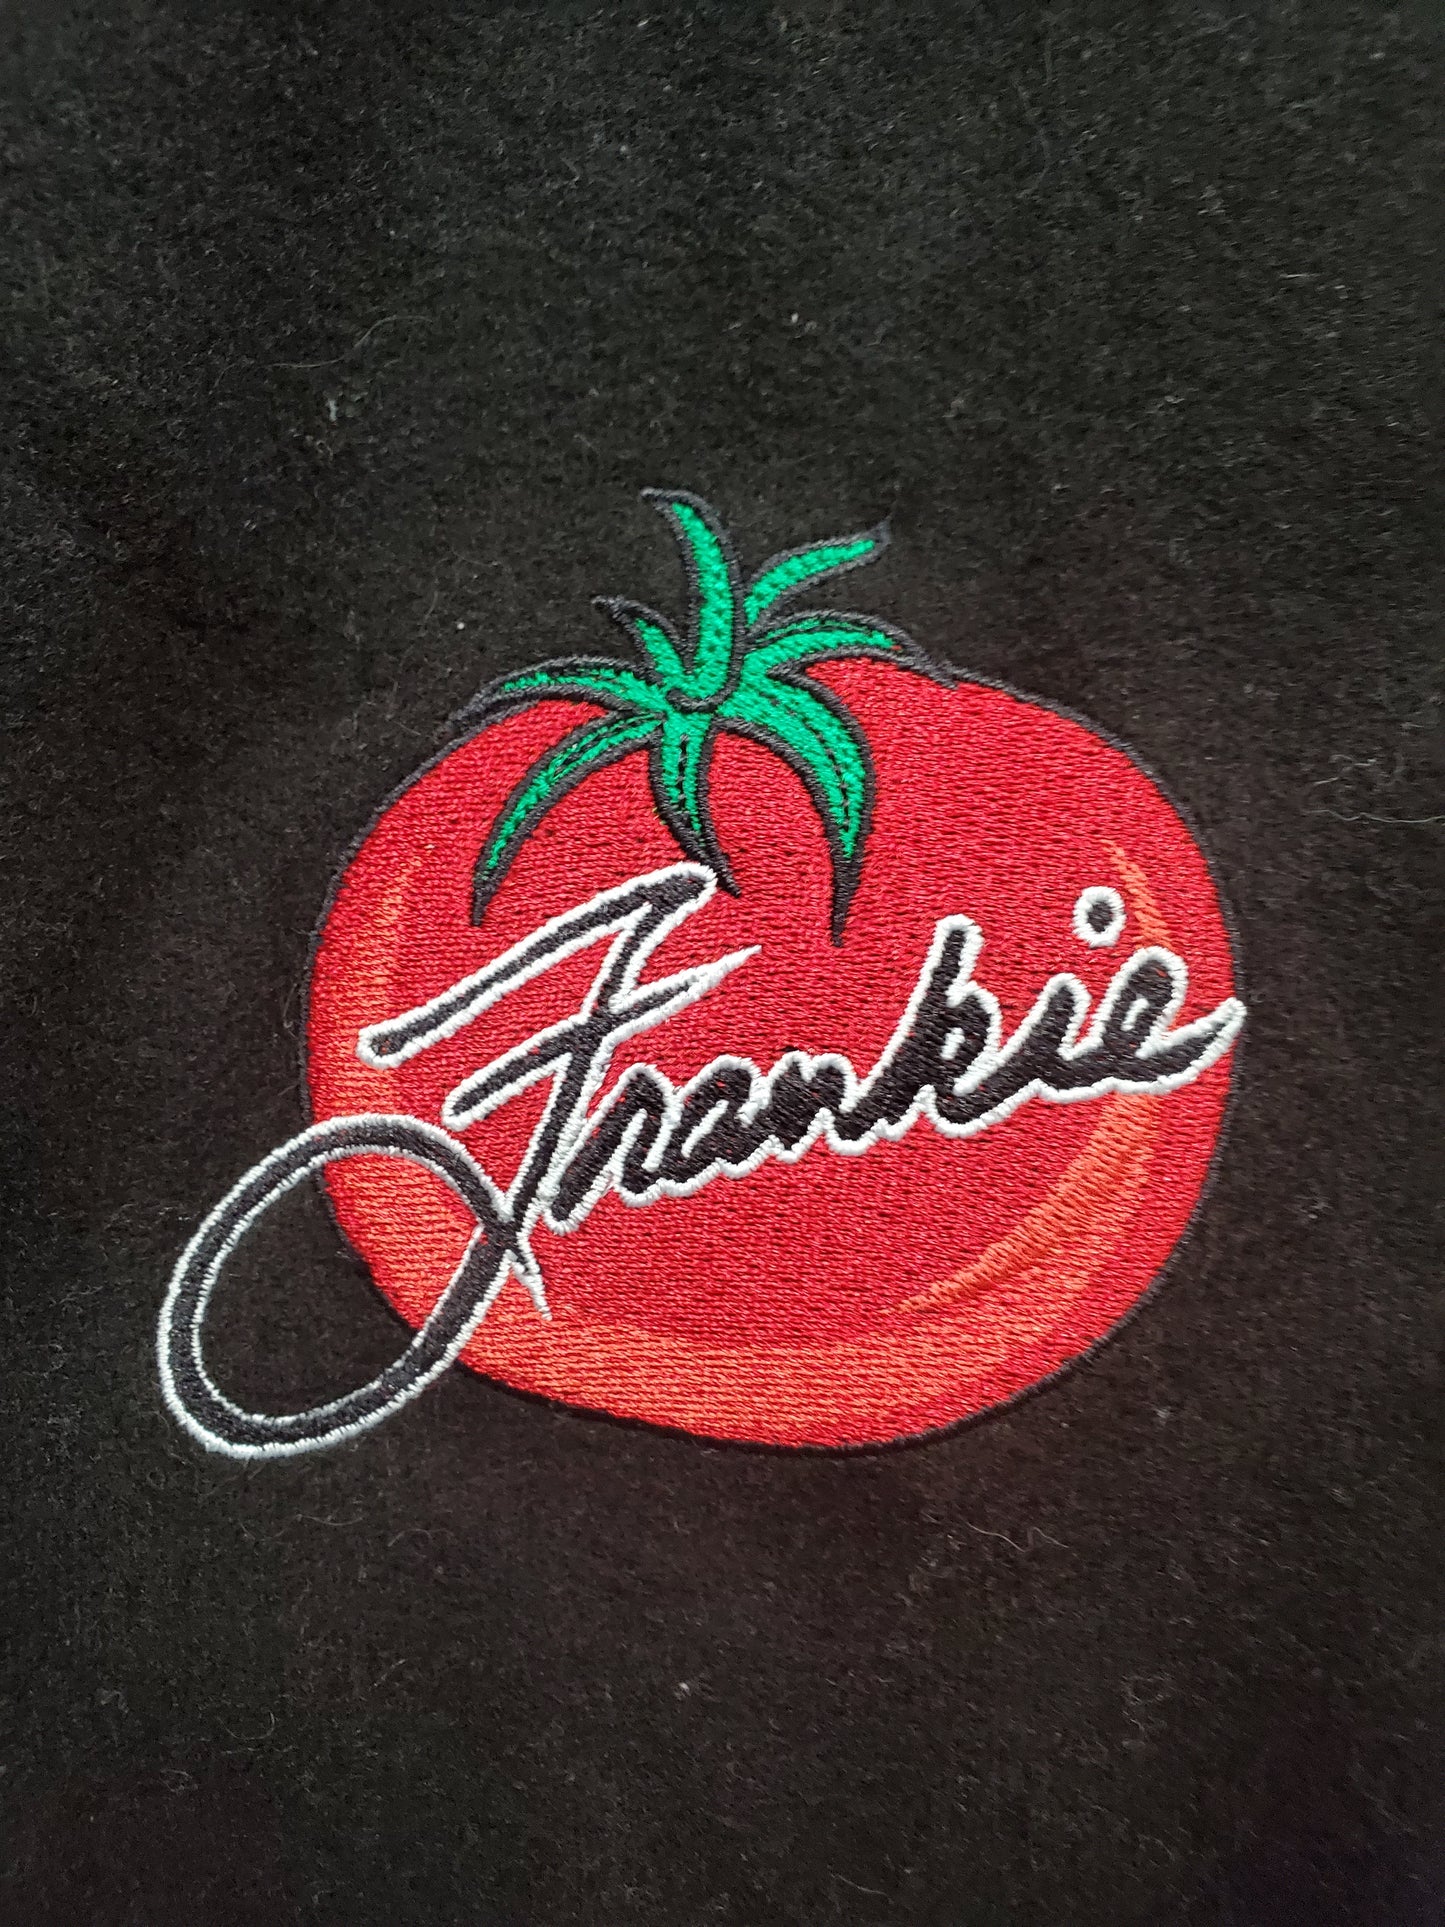 Mens Frankie Tomato Jacket Size Large